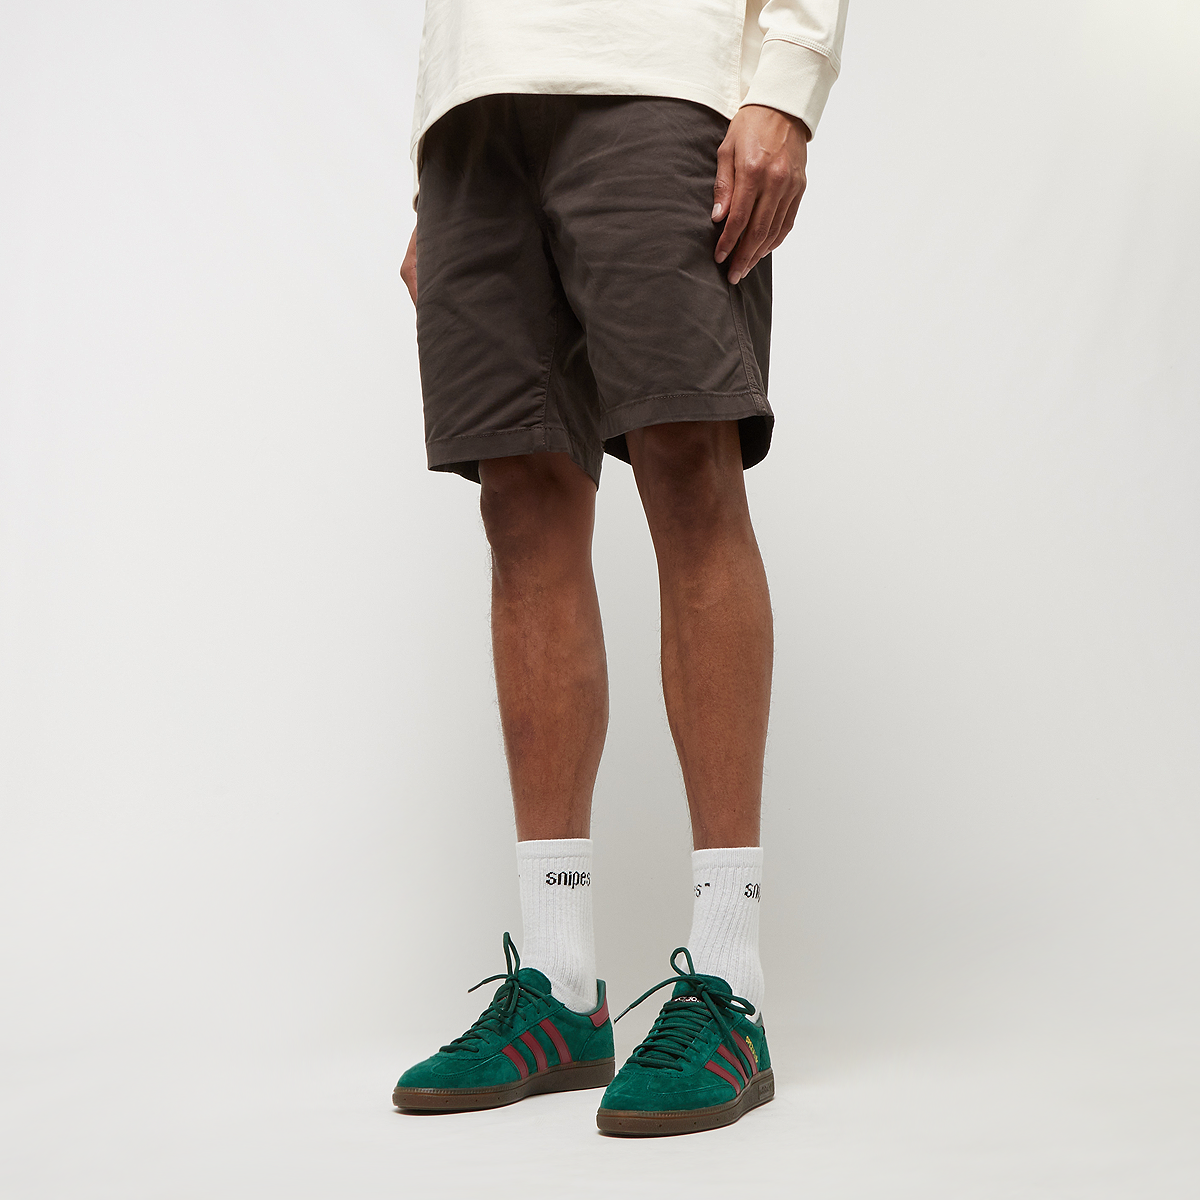 Urban Classics Strech Twill Joggshorts Chino shorts Kleding brown maat: XXL beschikbare maaten:L XL XXL